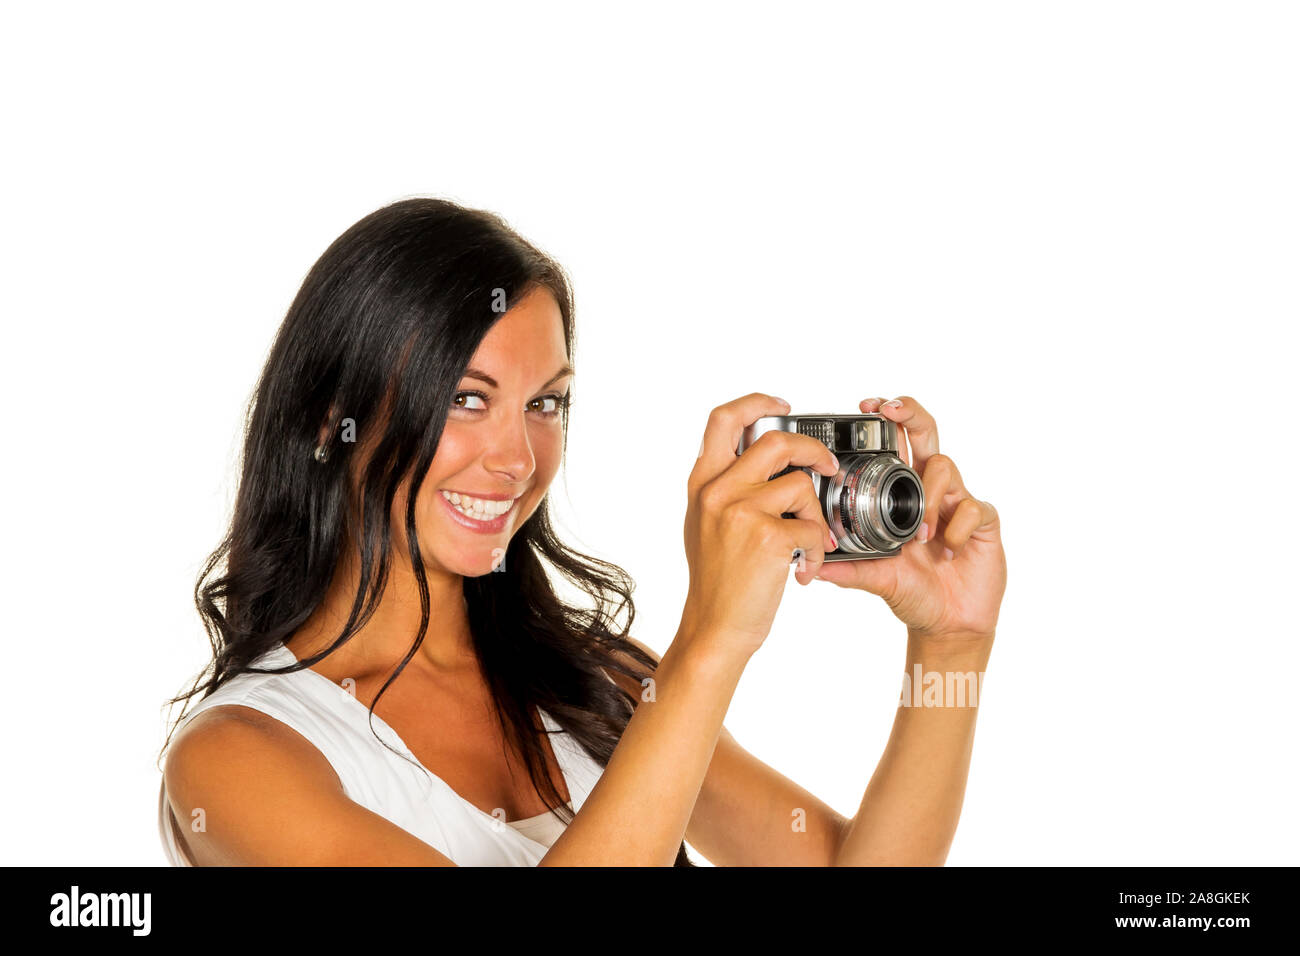 Eine junge Frau fotografiert mit einer Kamera retrò, 20, 25, Jahre, signor: Sì, Foto Stock